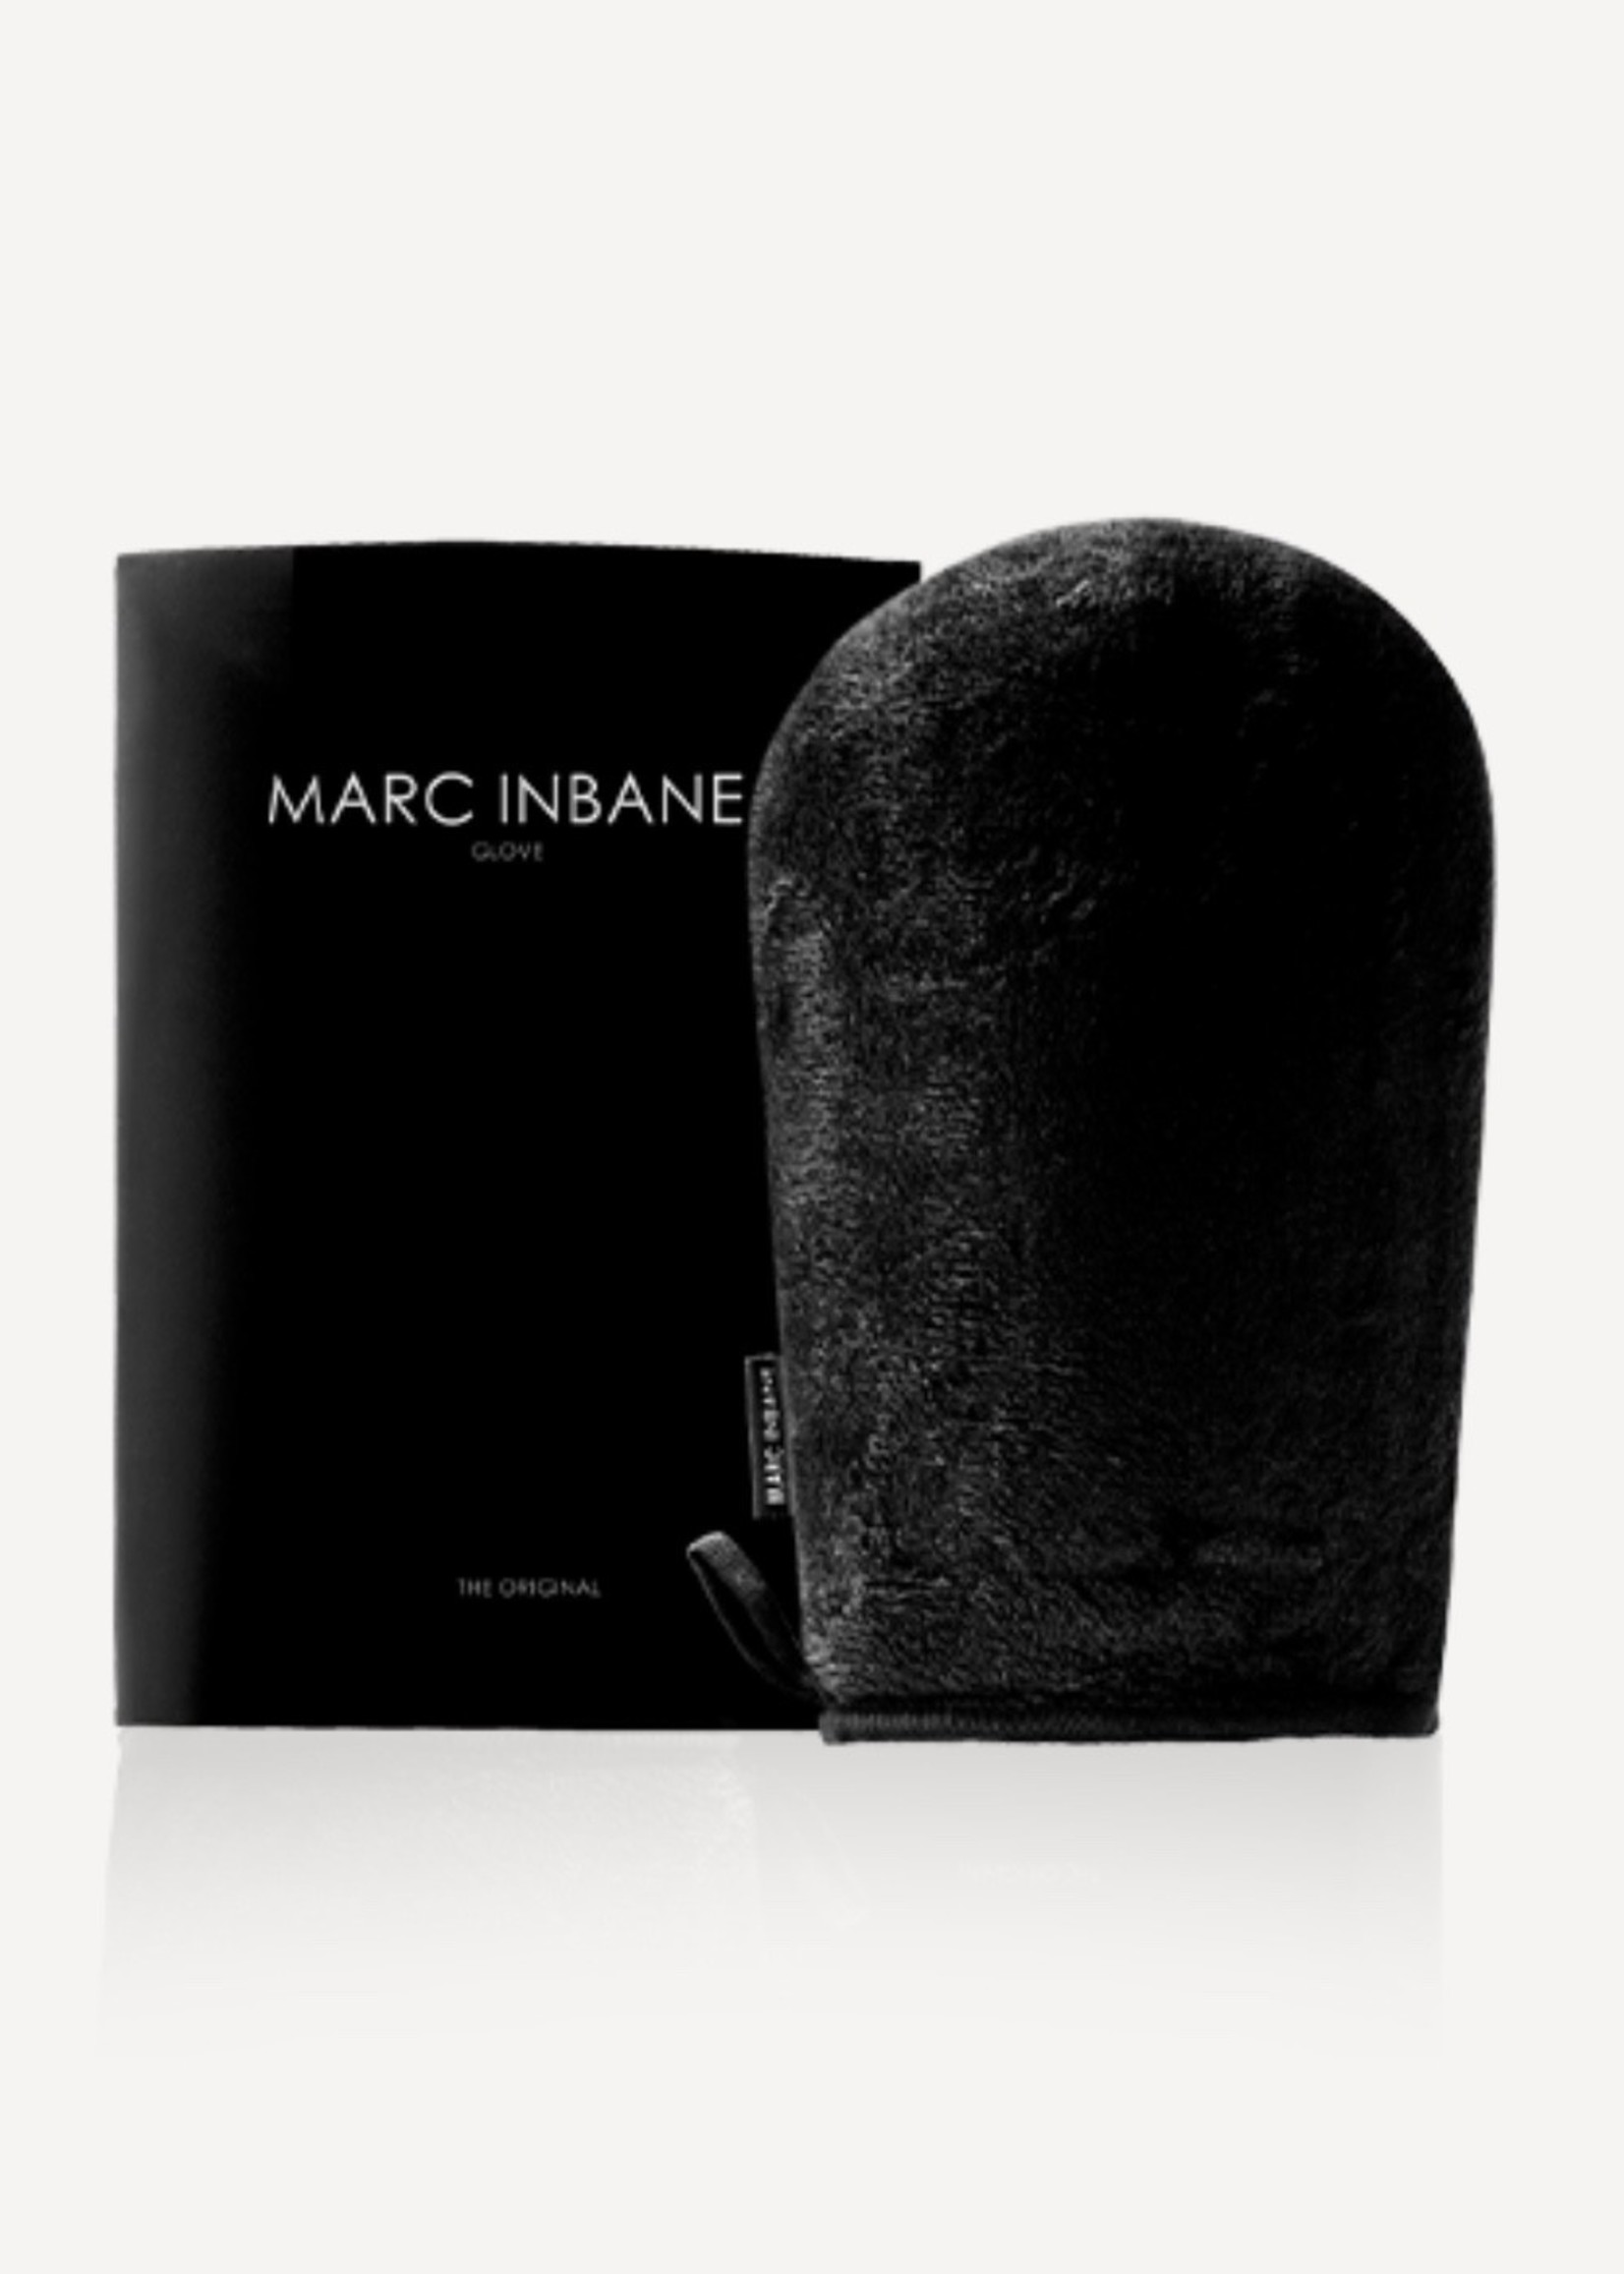 Marc Inbane Marc Inbane Glove